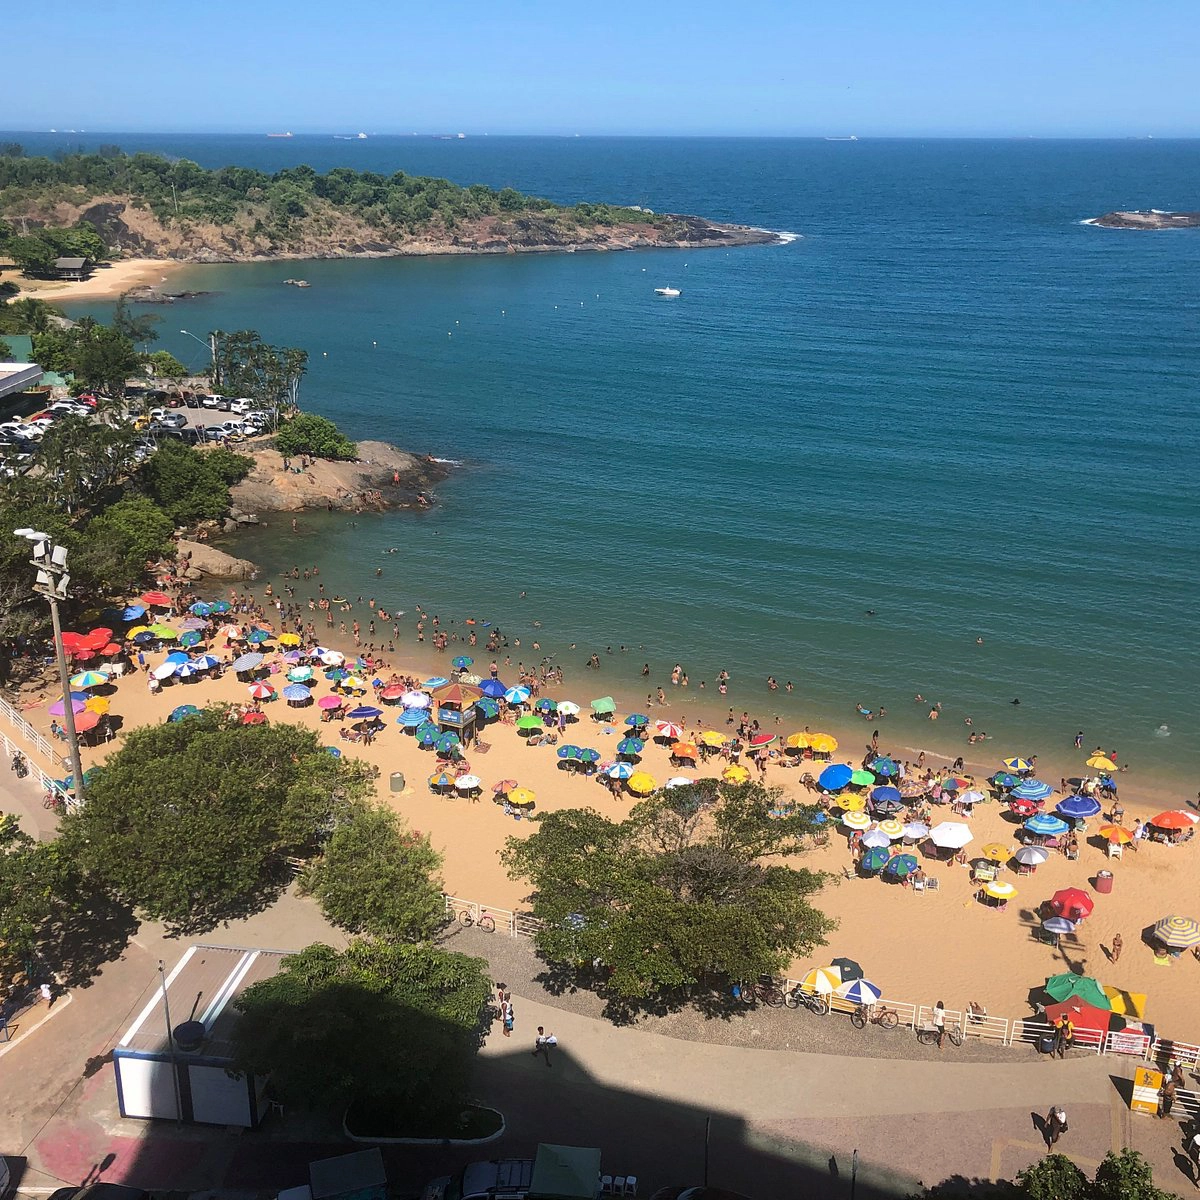  Sereia  strand - Portuguese Riviera